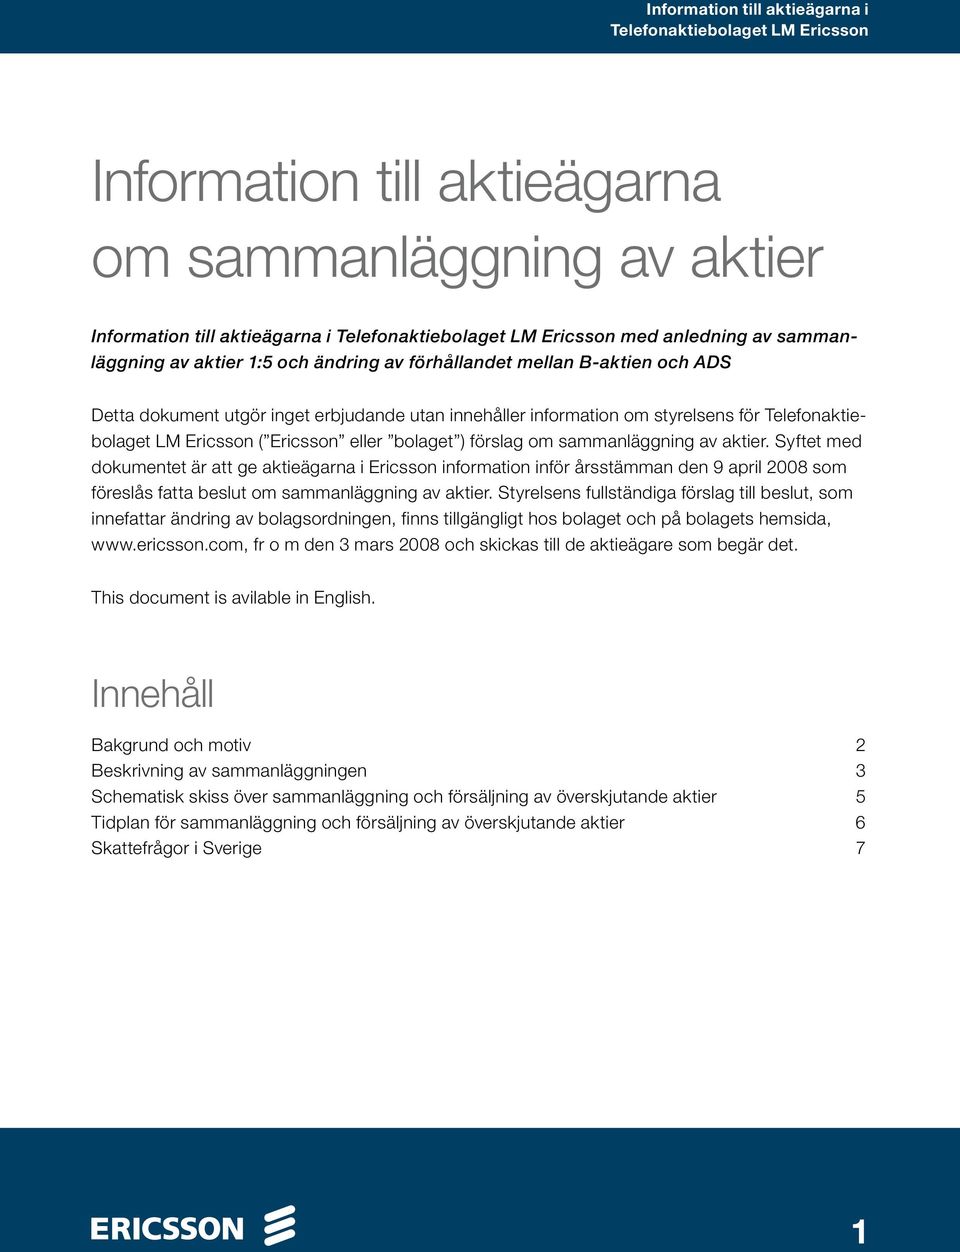 Syftet med dokumentet är att ge aktieägarna i Ericsson information inför årsstämman den 9 april 2008 som föreslås fatta beslut om sammanläggning av aktier.